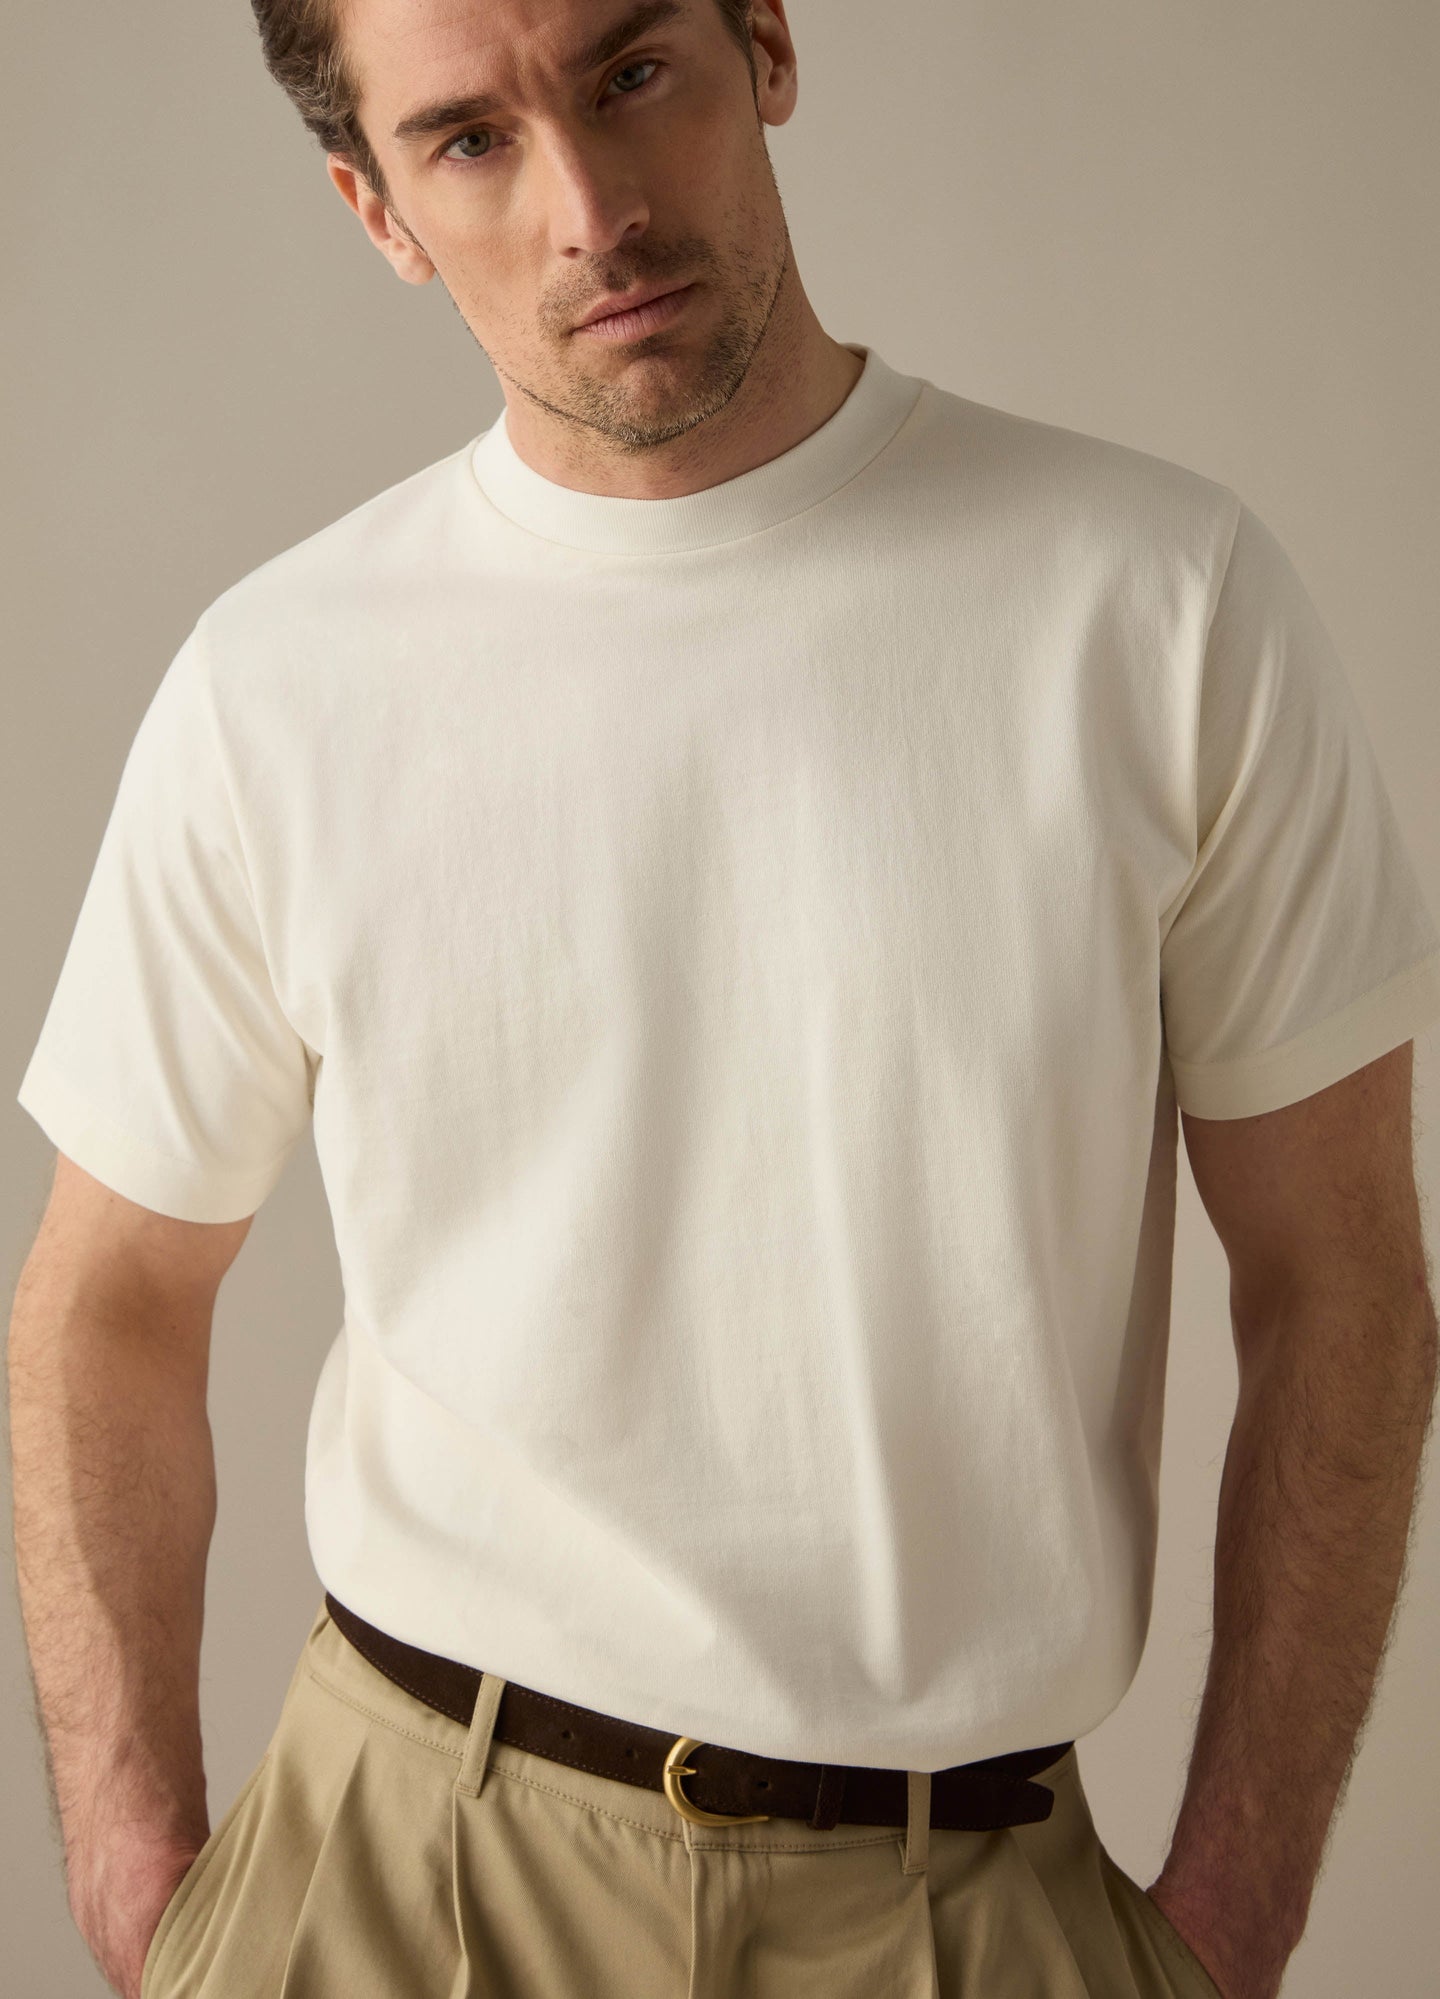 Tony T-Shirt - White Berg & Berg